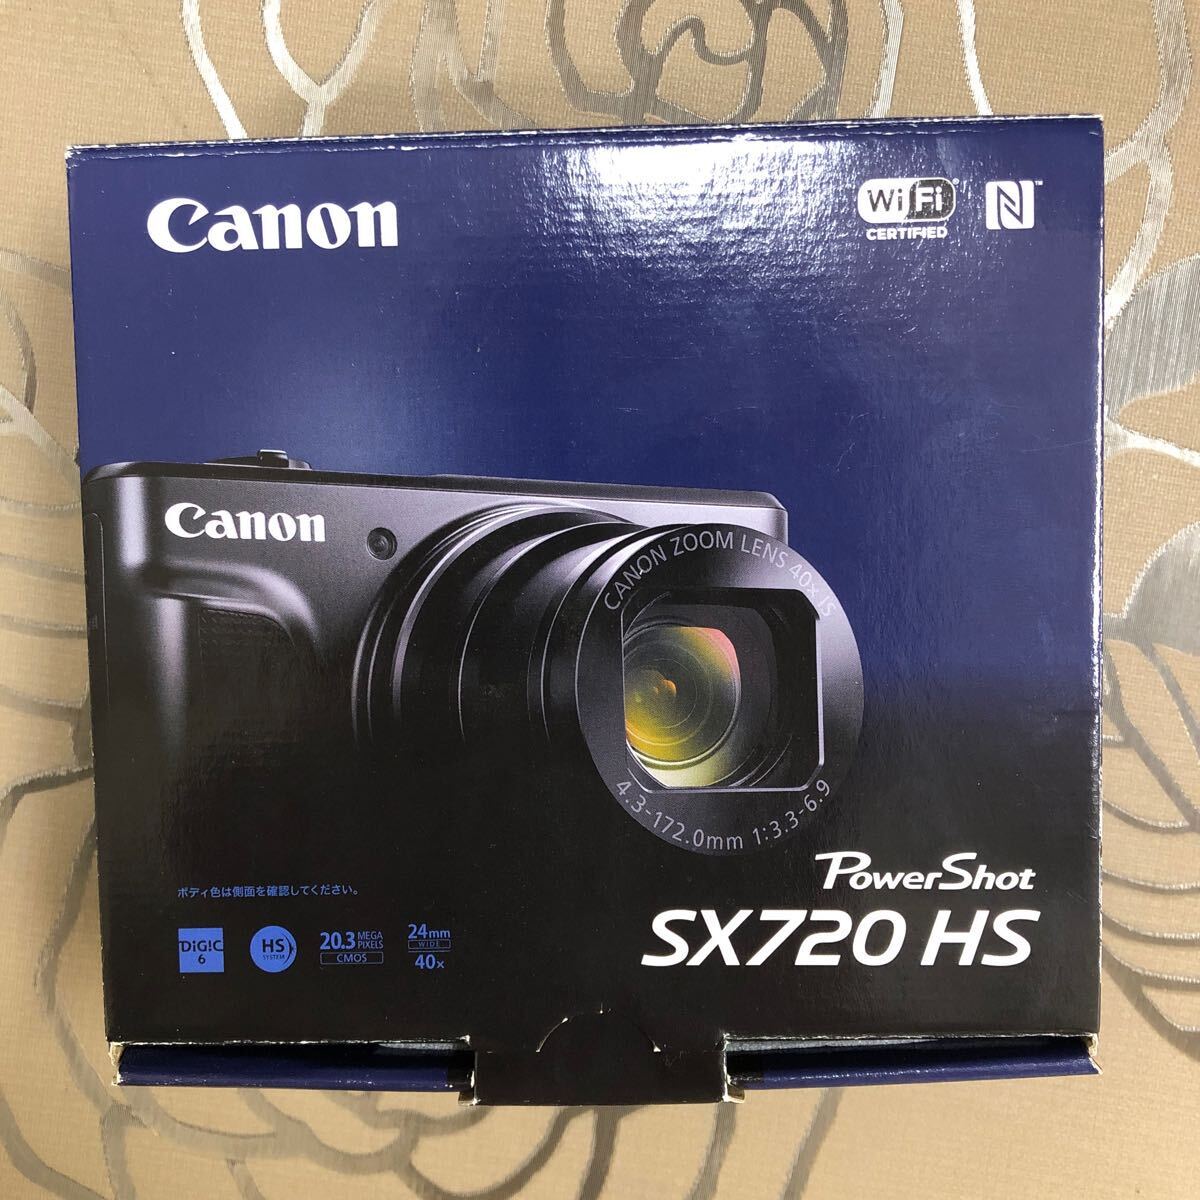 【箱付き】Canon SH720 HS コンパクトデジタルカメラ キャノン キヤノン PowerShot ブラック デジカメ Power _箱付き